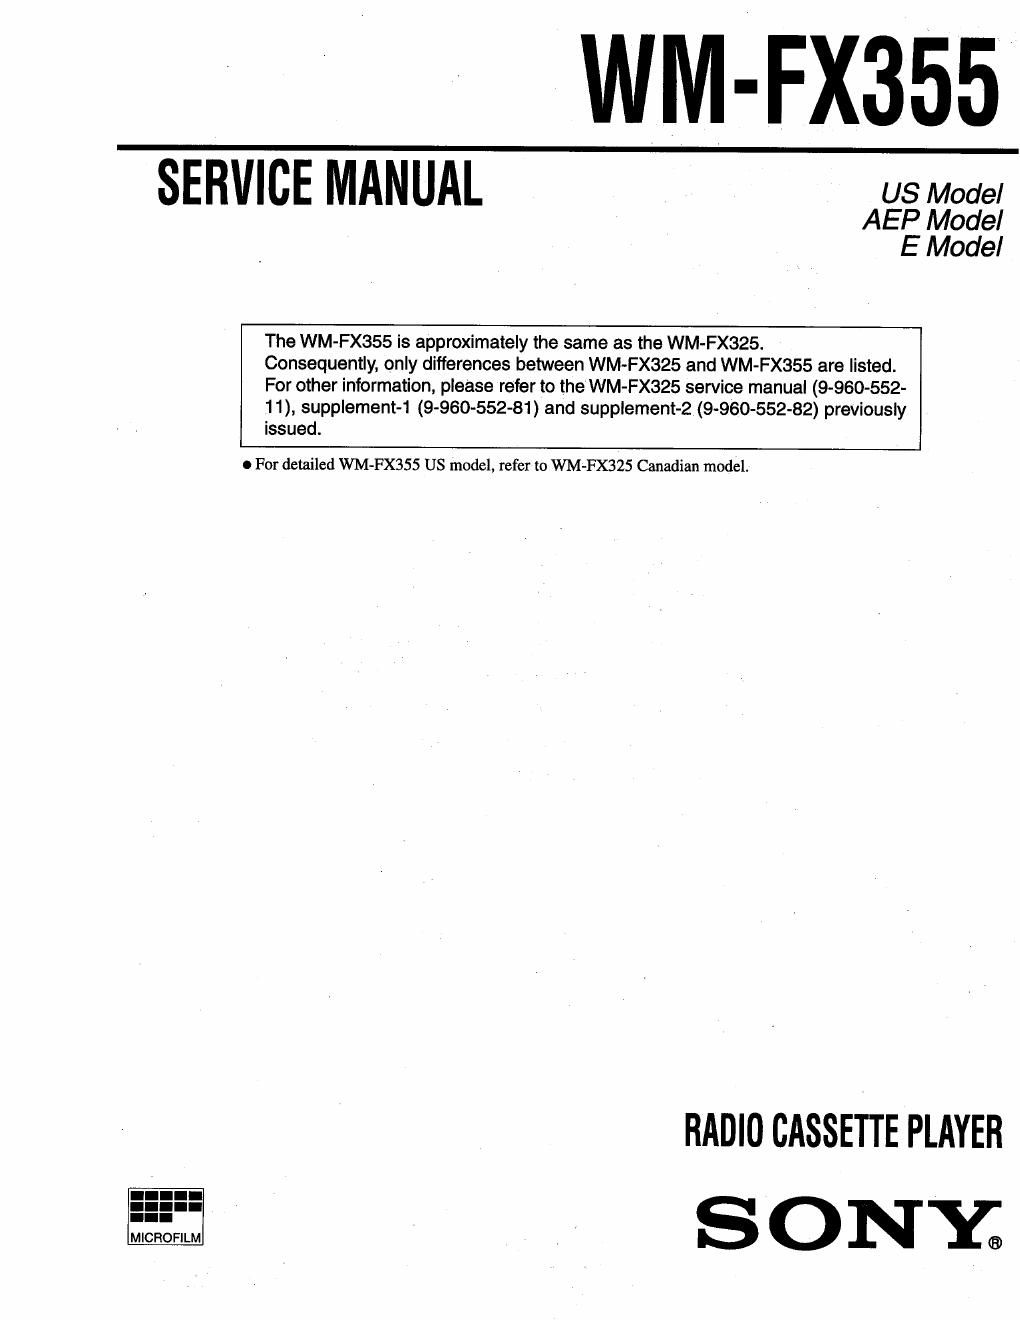 sony wm fx 355 service manual